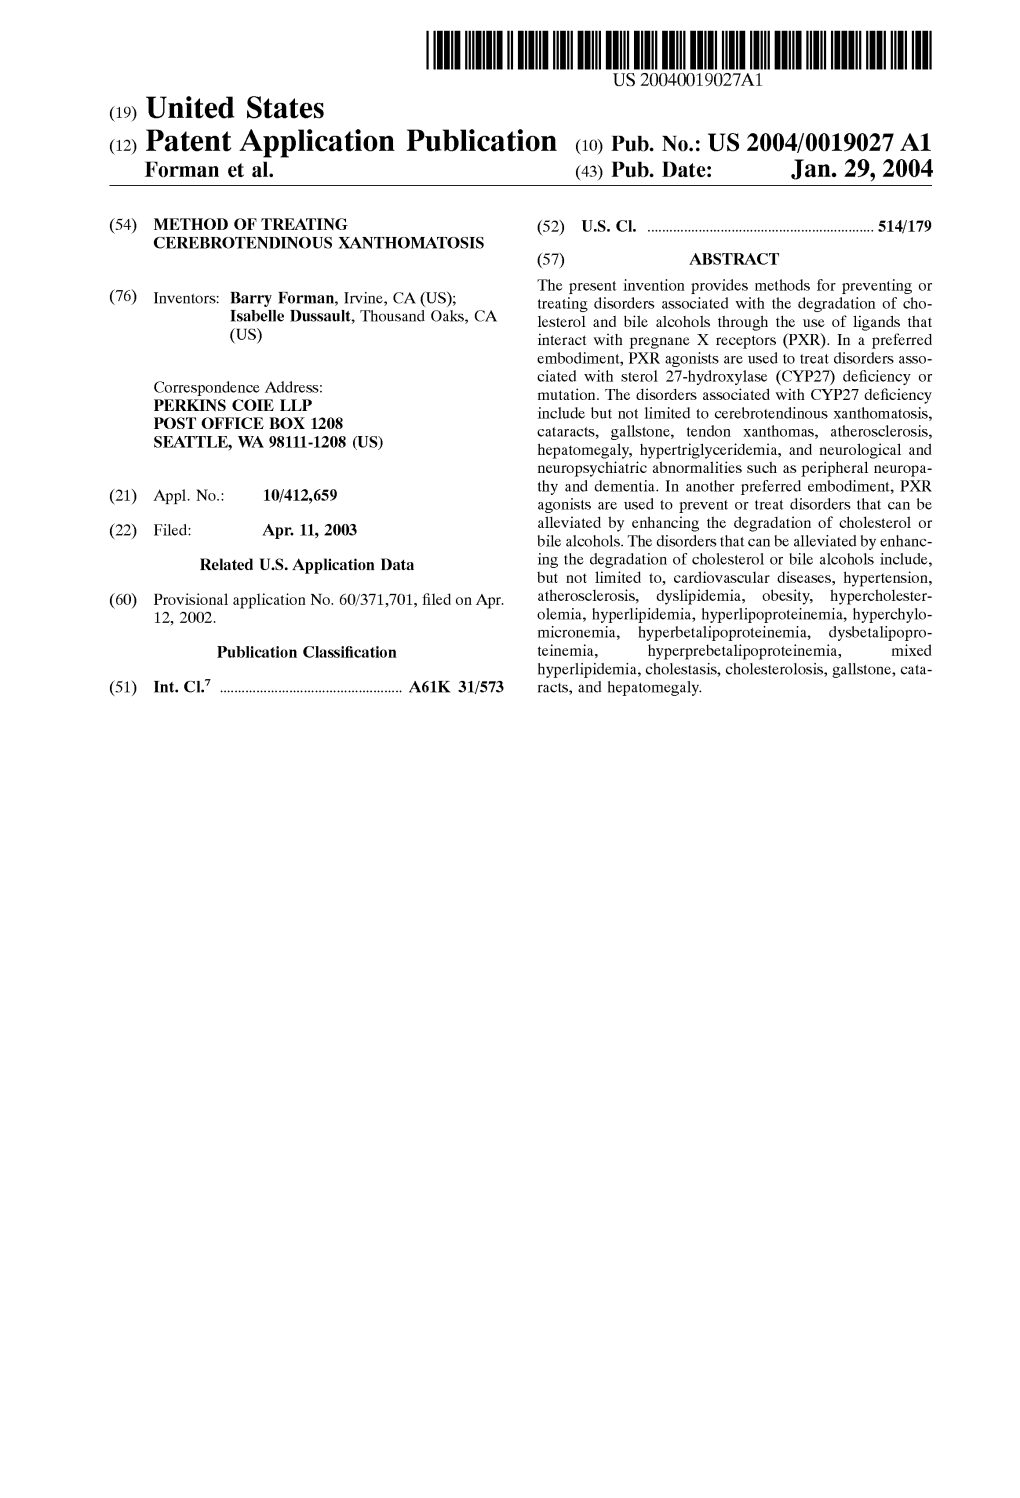 (12) Patent Application Publication (10) Pub. No.: US 2004/0019027 A1 Forman Et Al